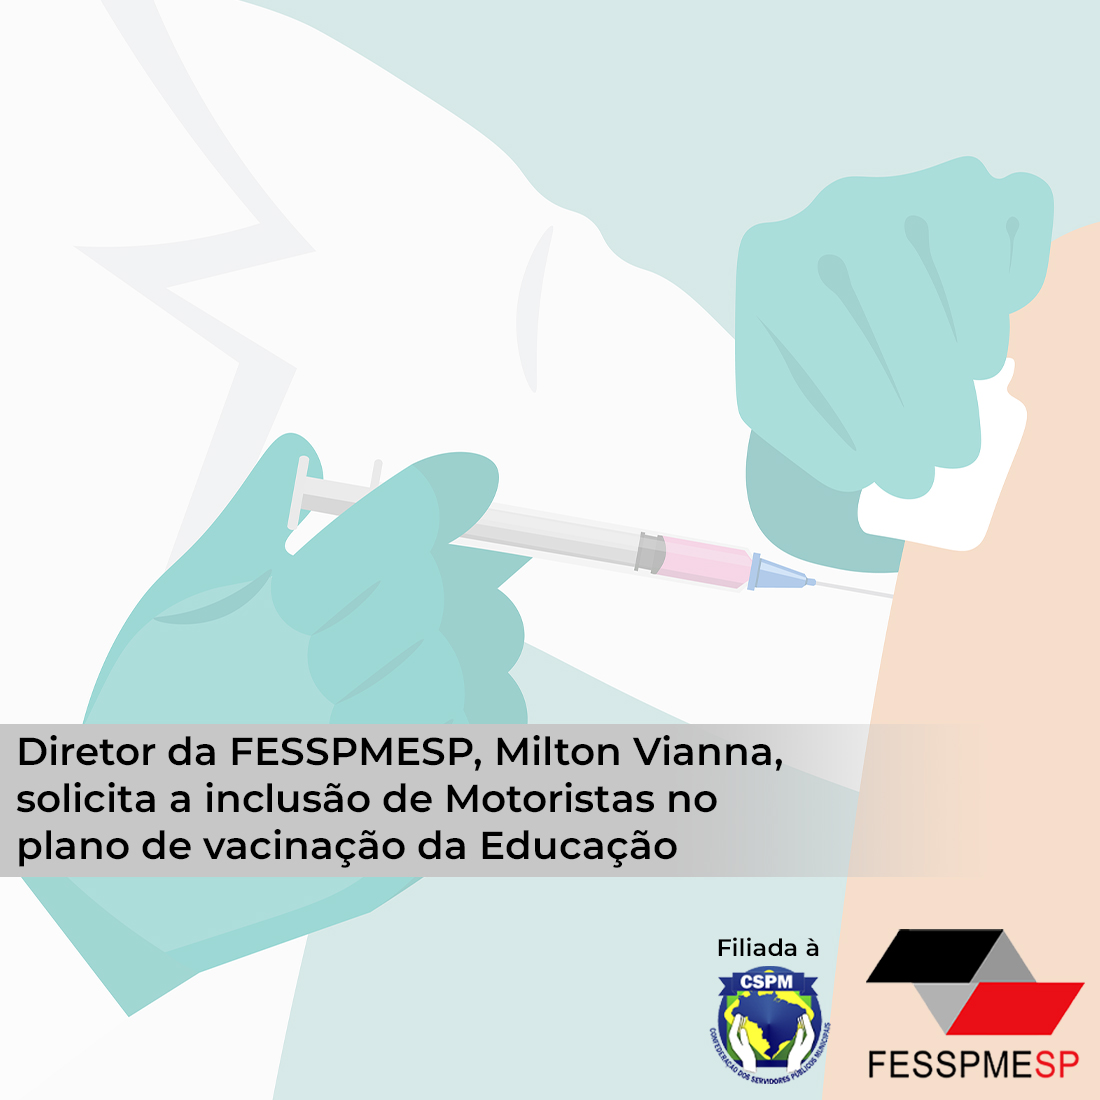 Diretor da FESSPMESP, Milton Vianna, solicita a inclusão de Motoristas e Monitores no plano de vacinação da Educação